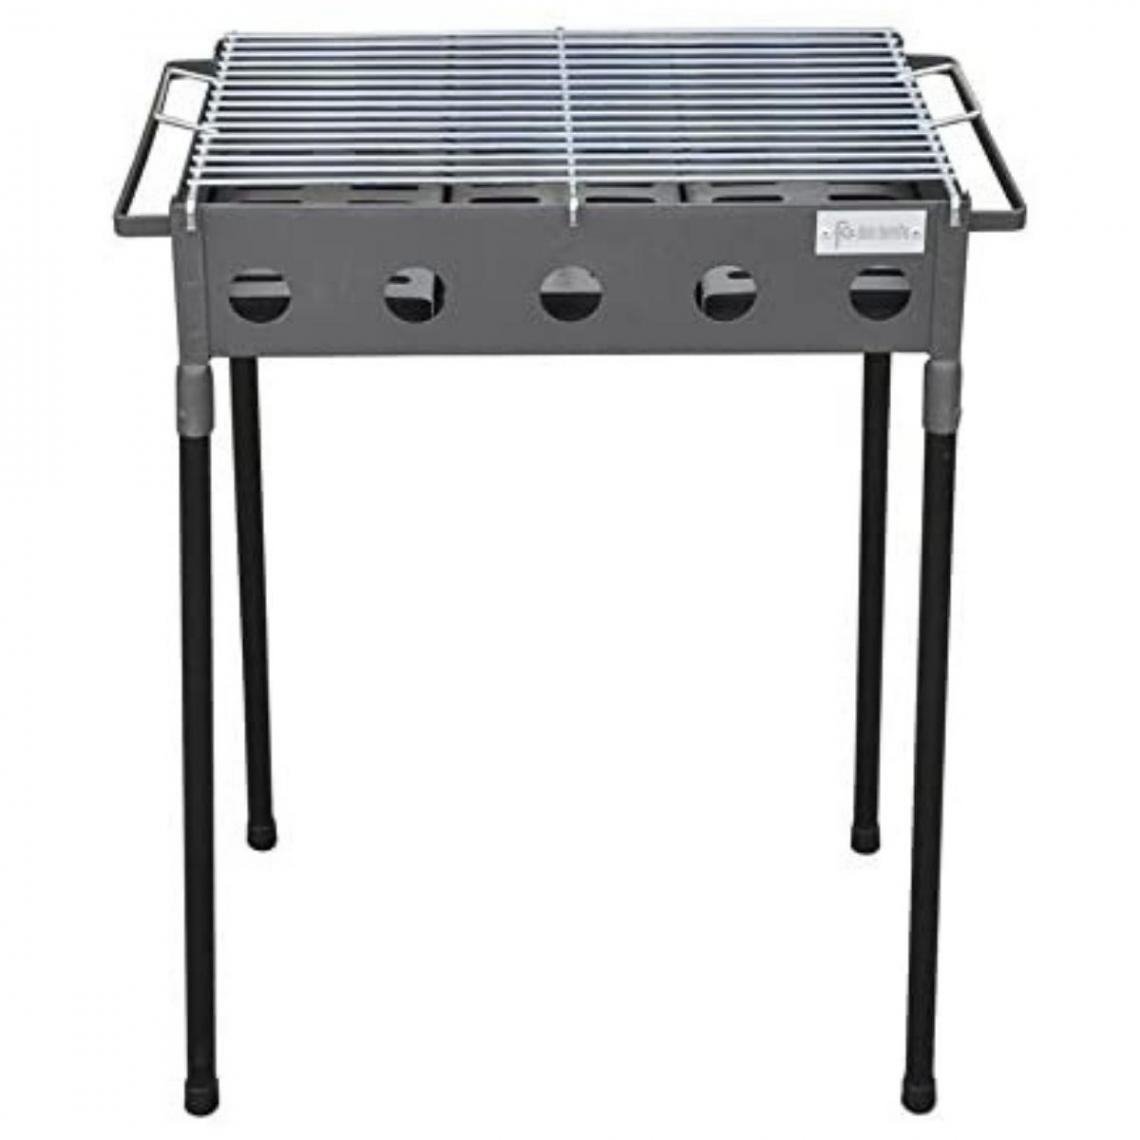 Visiodirect - Barbecue rectangulaire en Acier inoxydable coloris Gris - 67 x 33 x 60 cm - Barbecues charbon de bois